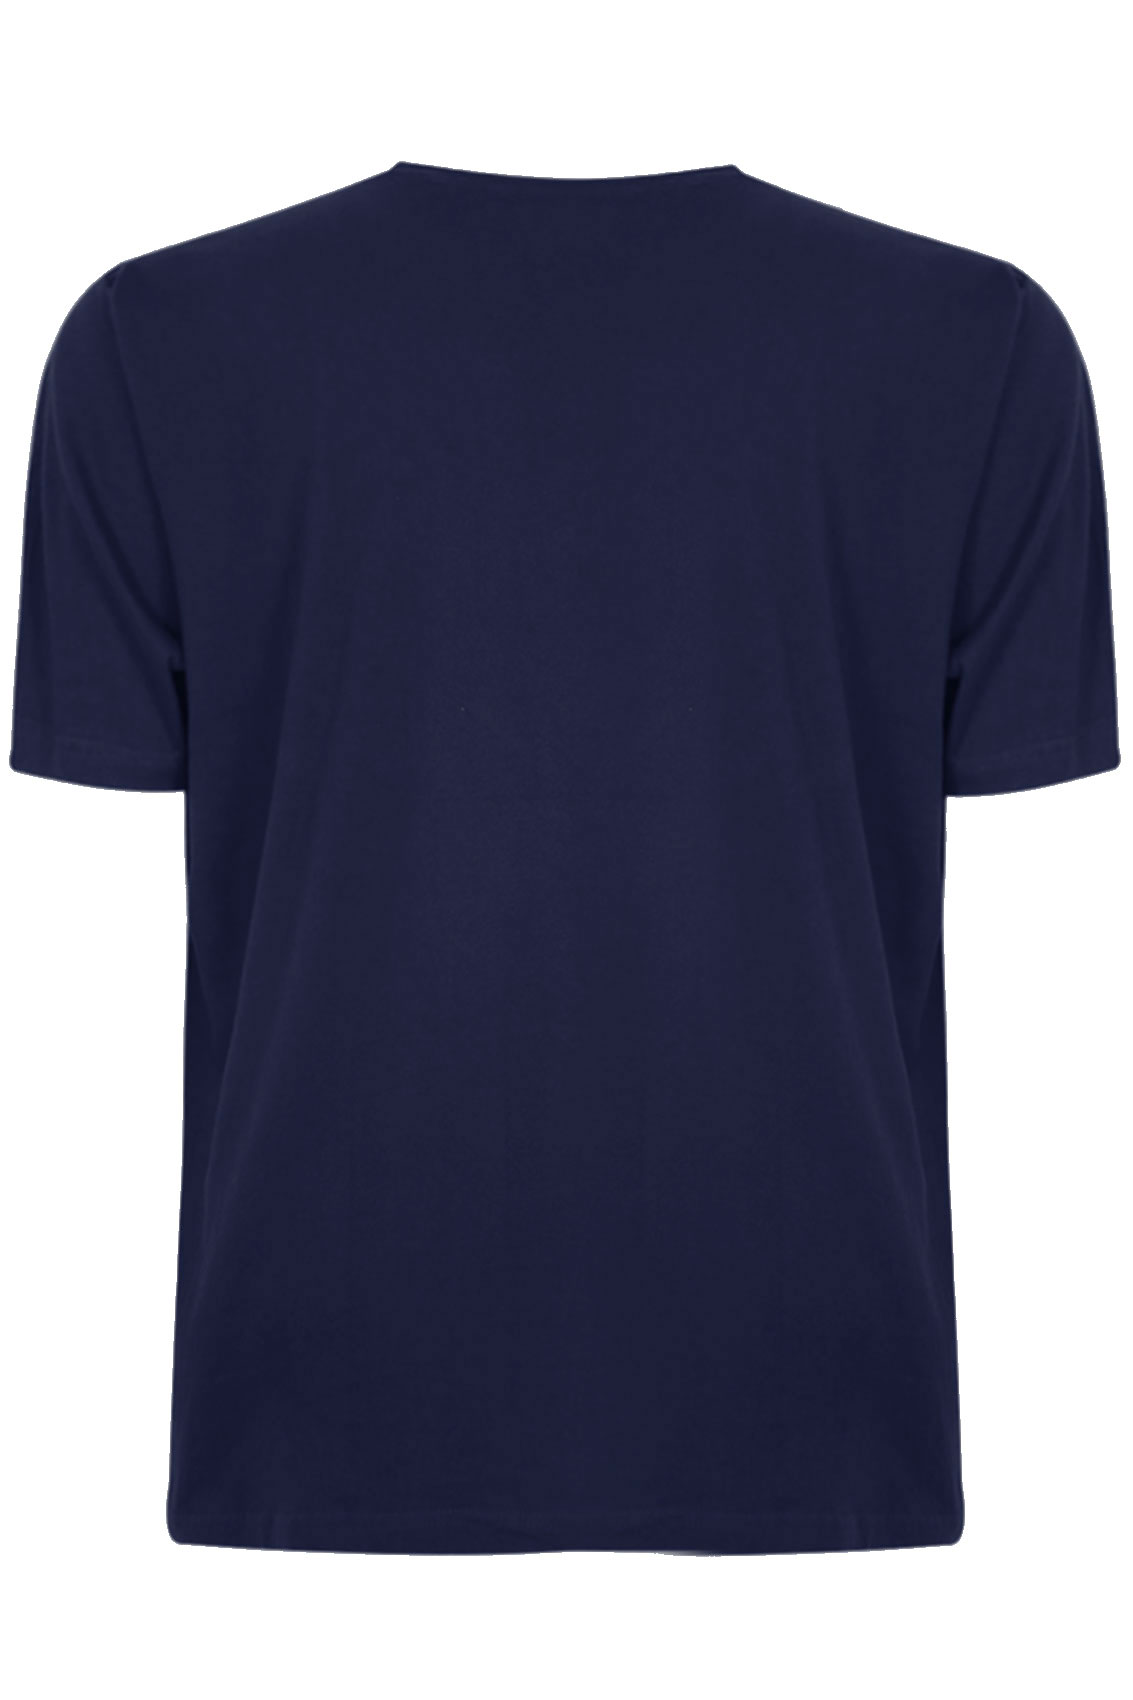 Navy Blue T Shirt Template